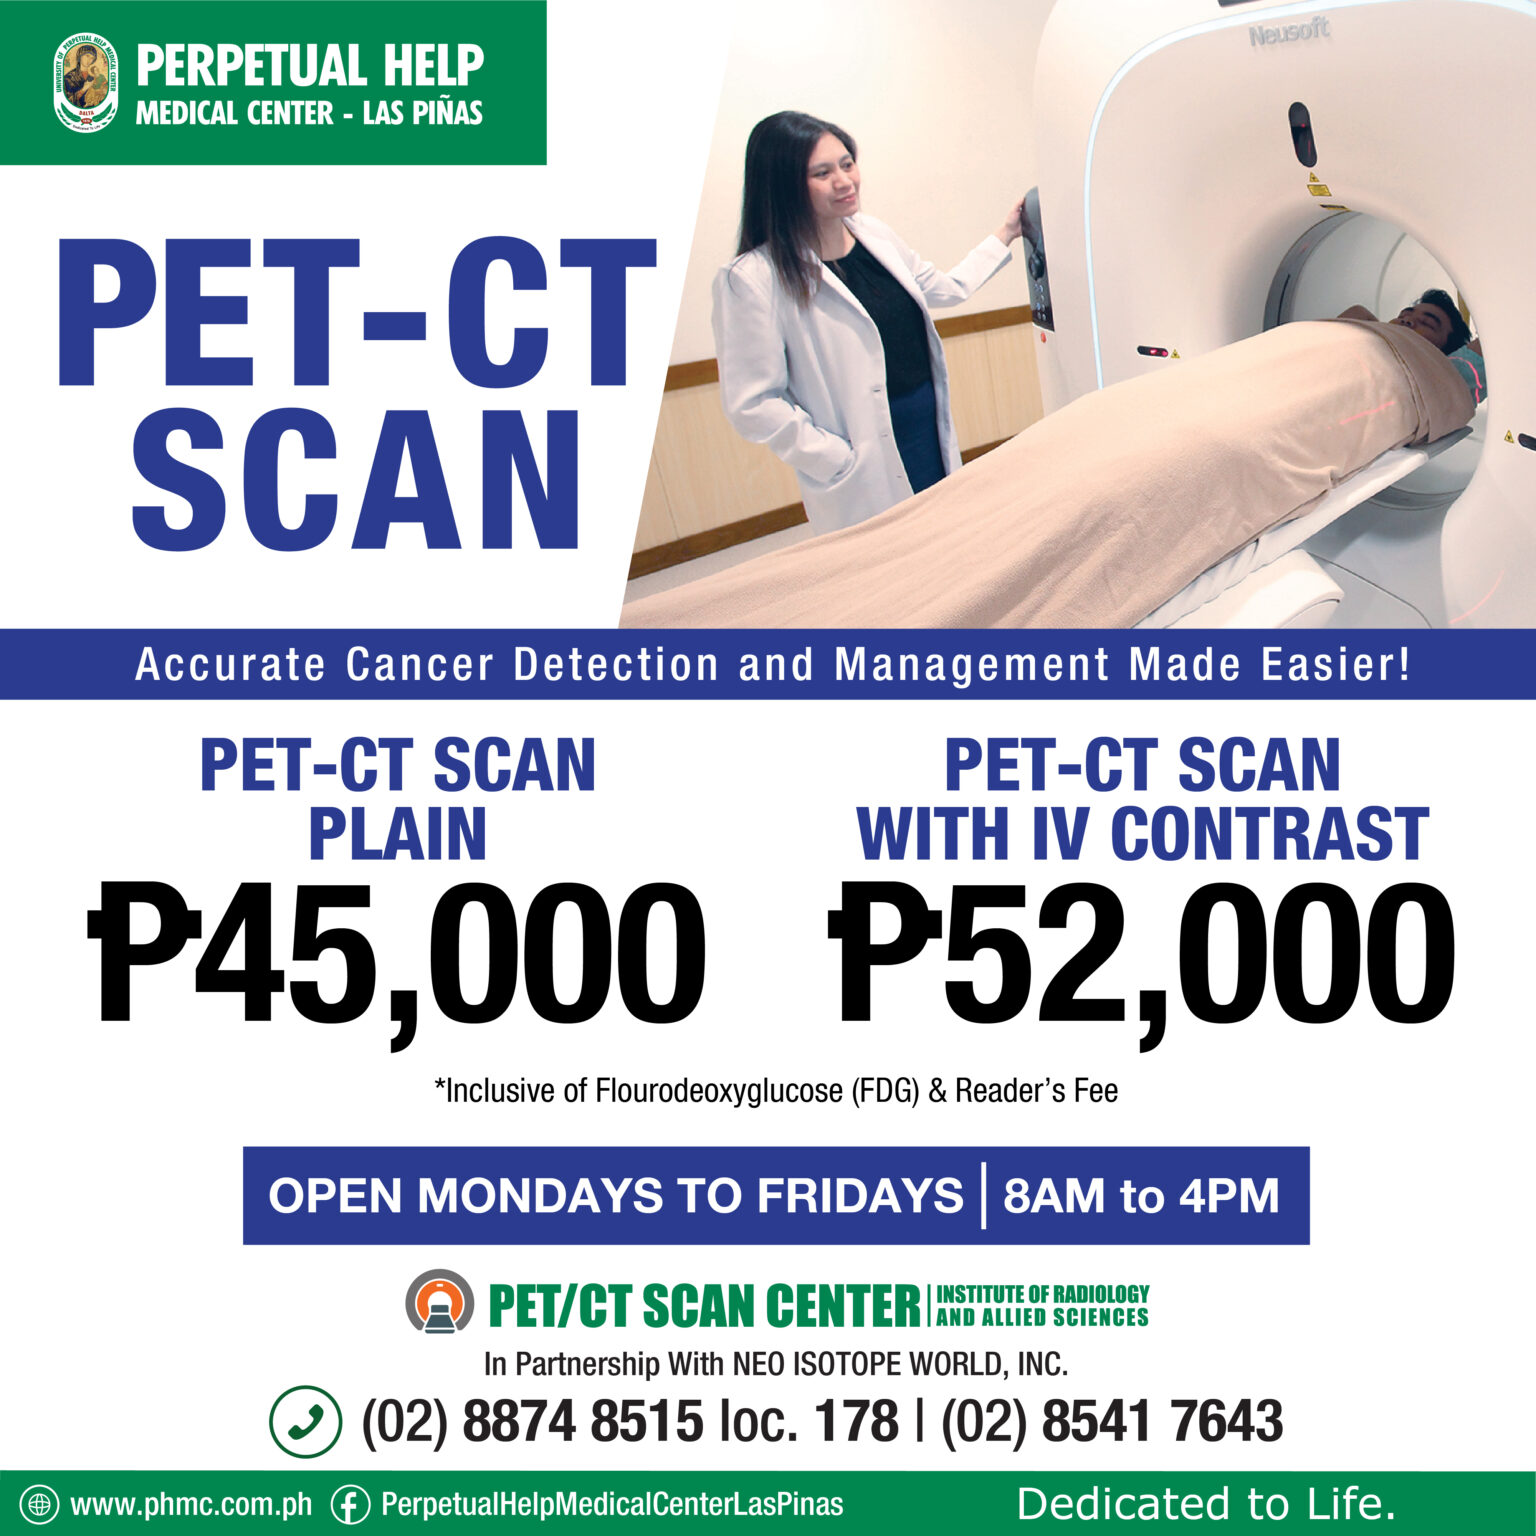 pet-ct-scan-p2-000-cash-rebate-promo-perpetual-help-medical-center